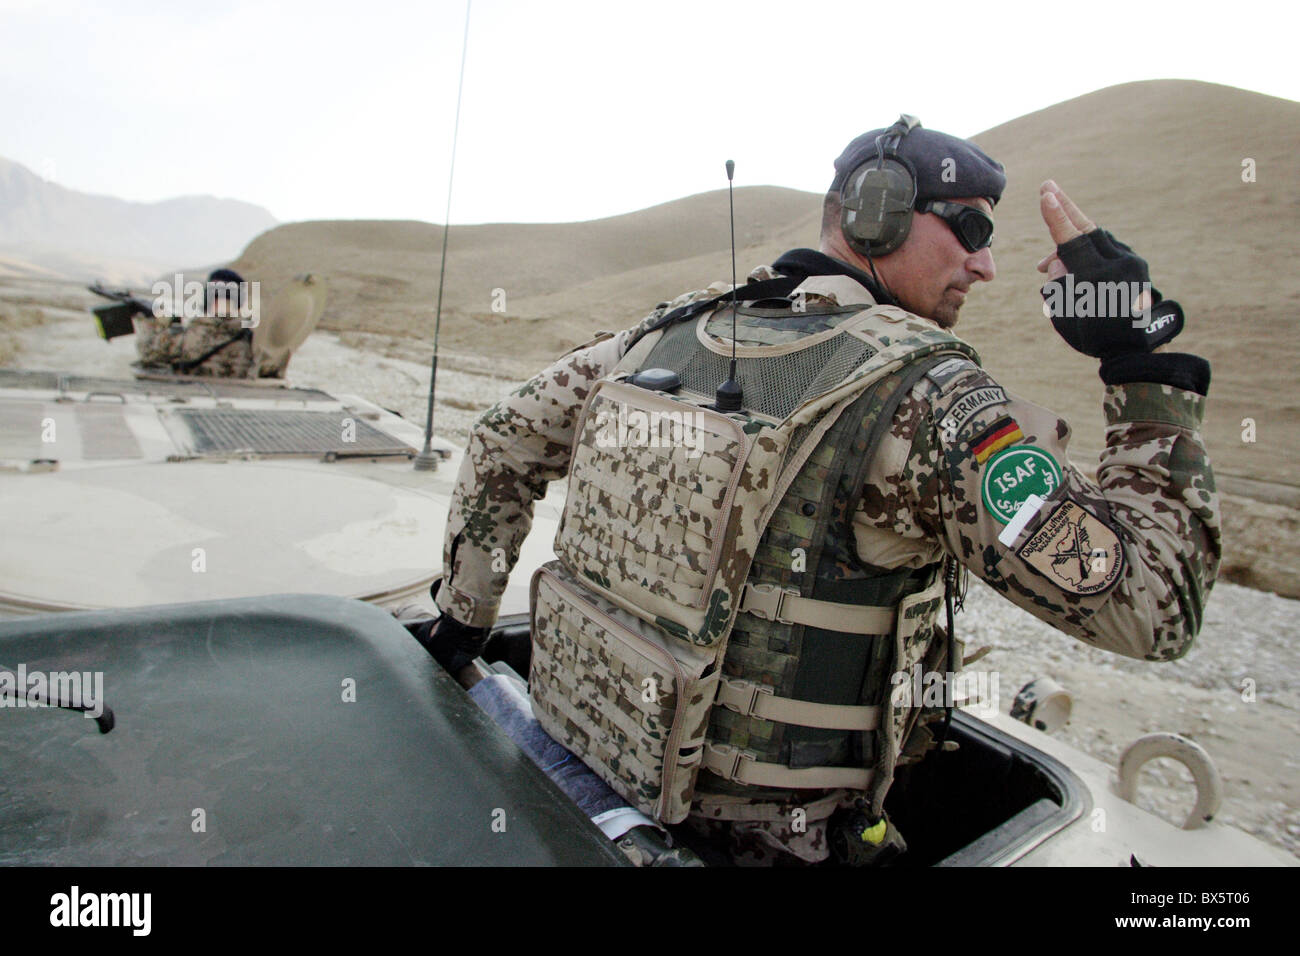 Soldat des forces armées allemandes qui servent dans les forces de protection de la FIAS sur une patrouille, Mazar-e Sharif, Afghanistan Banque D'Images